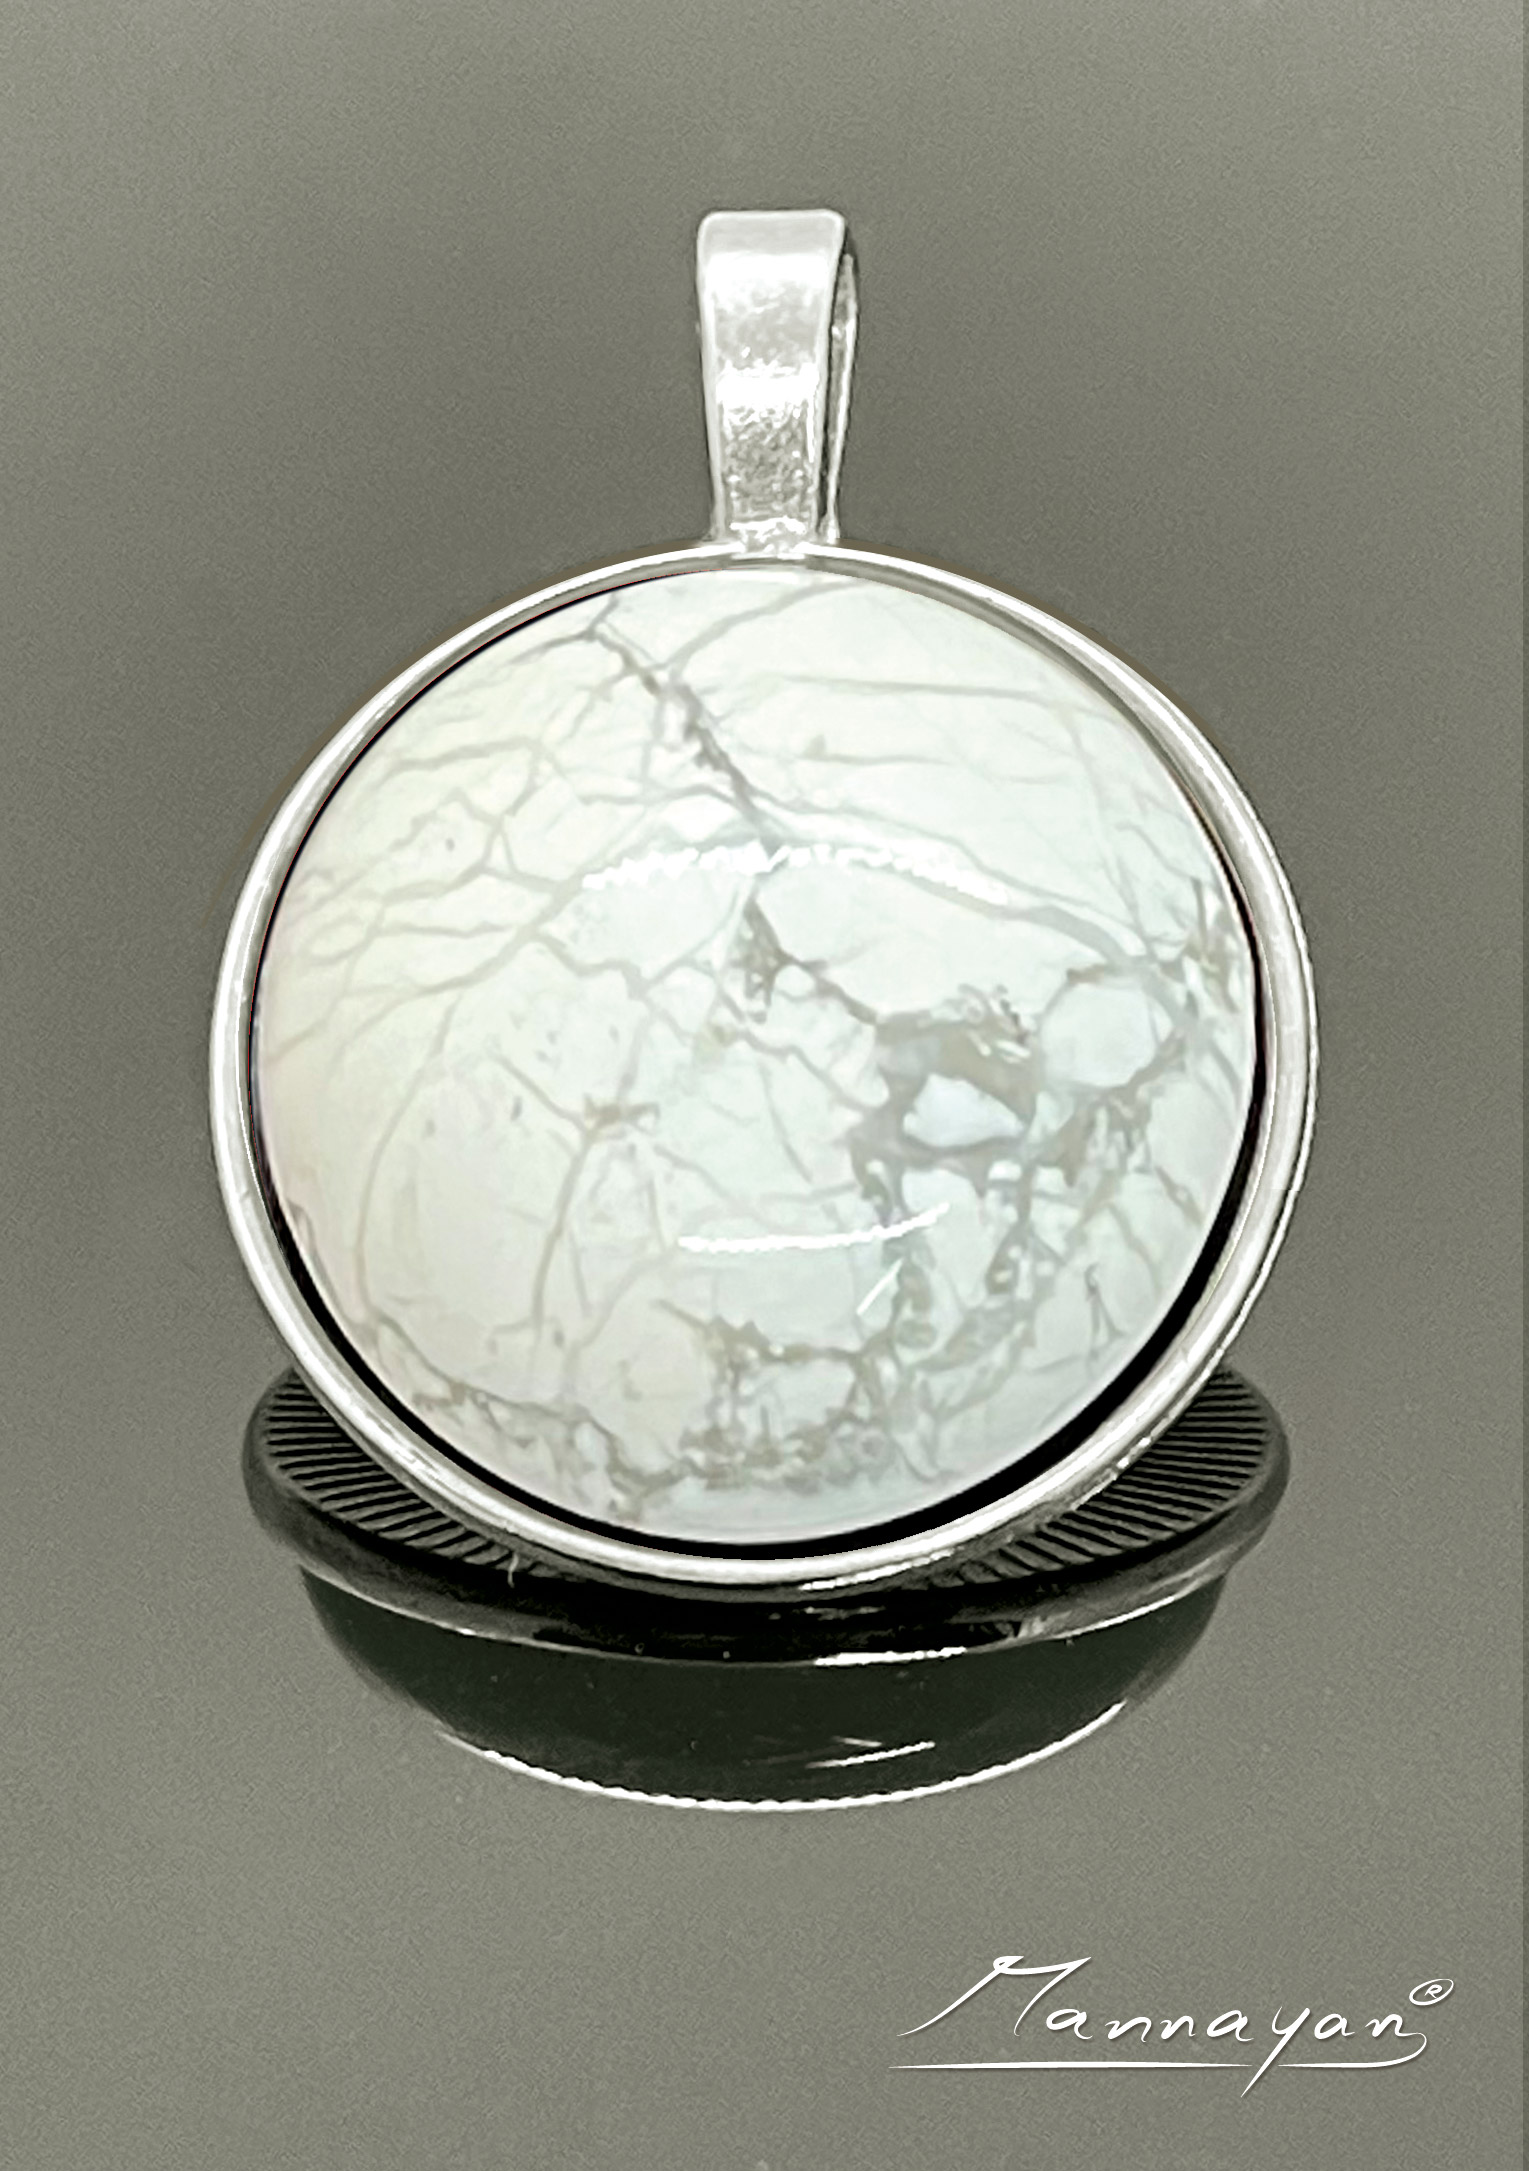 E-Blocker amulet "Semi-precious stone"